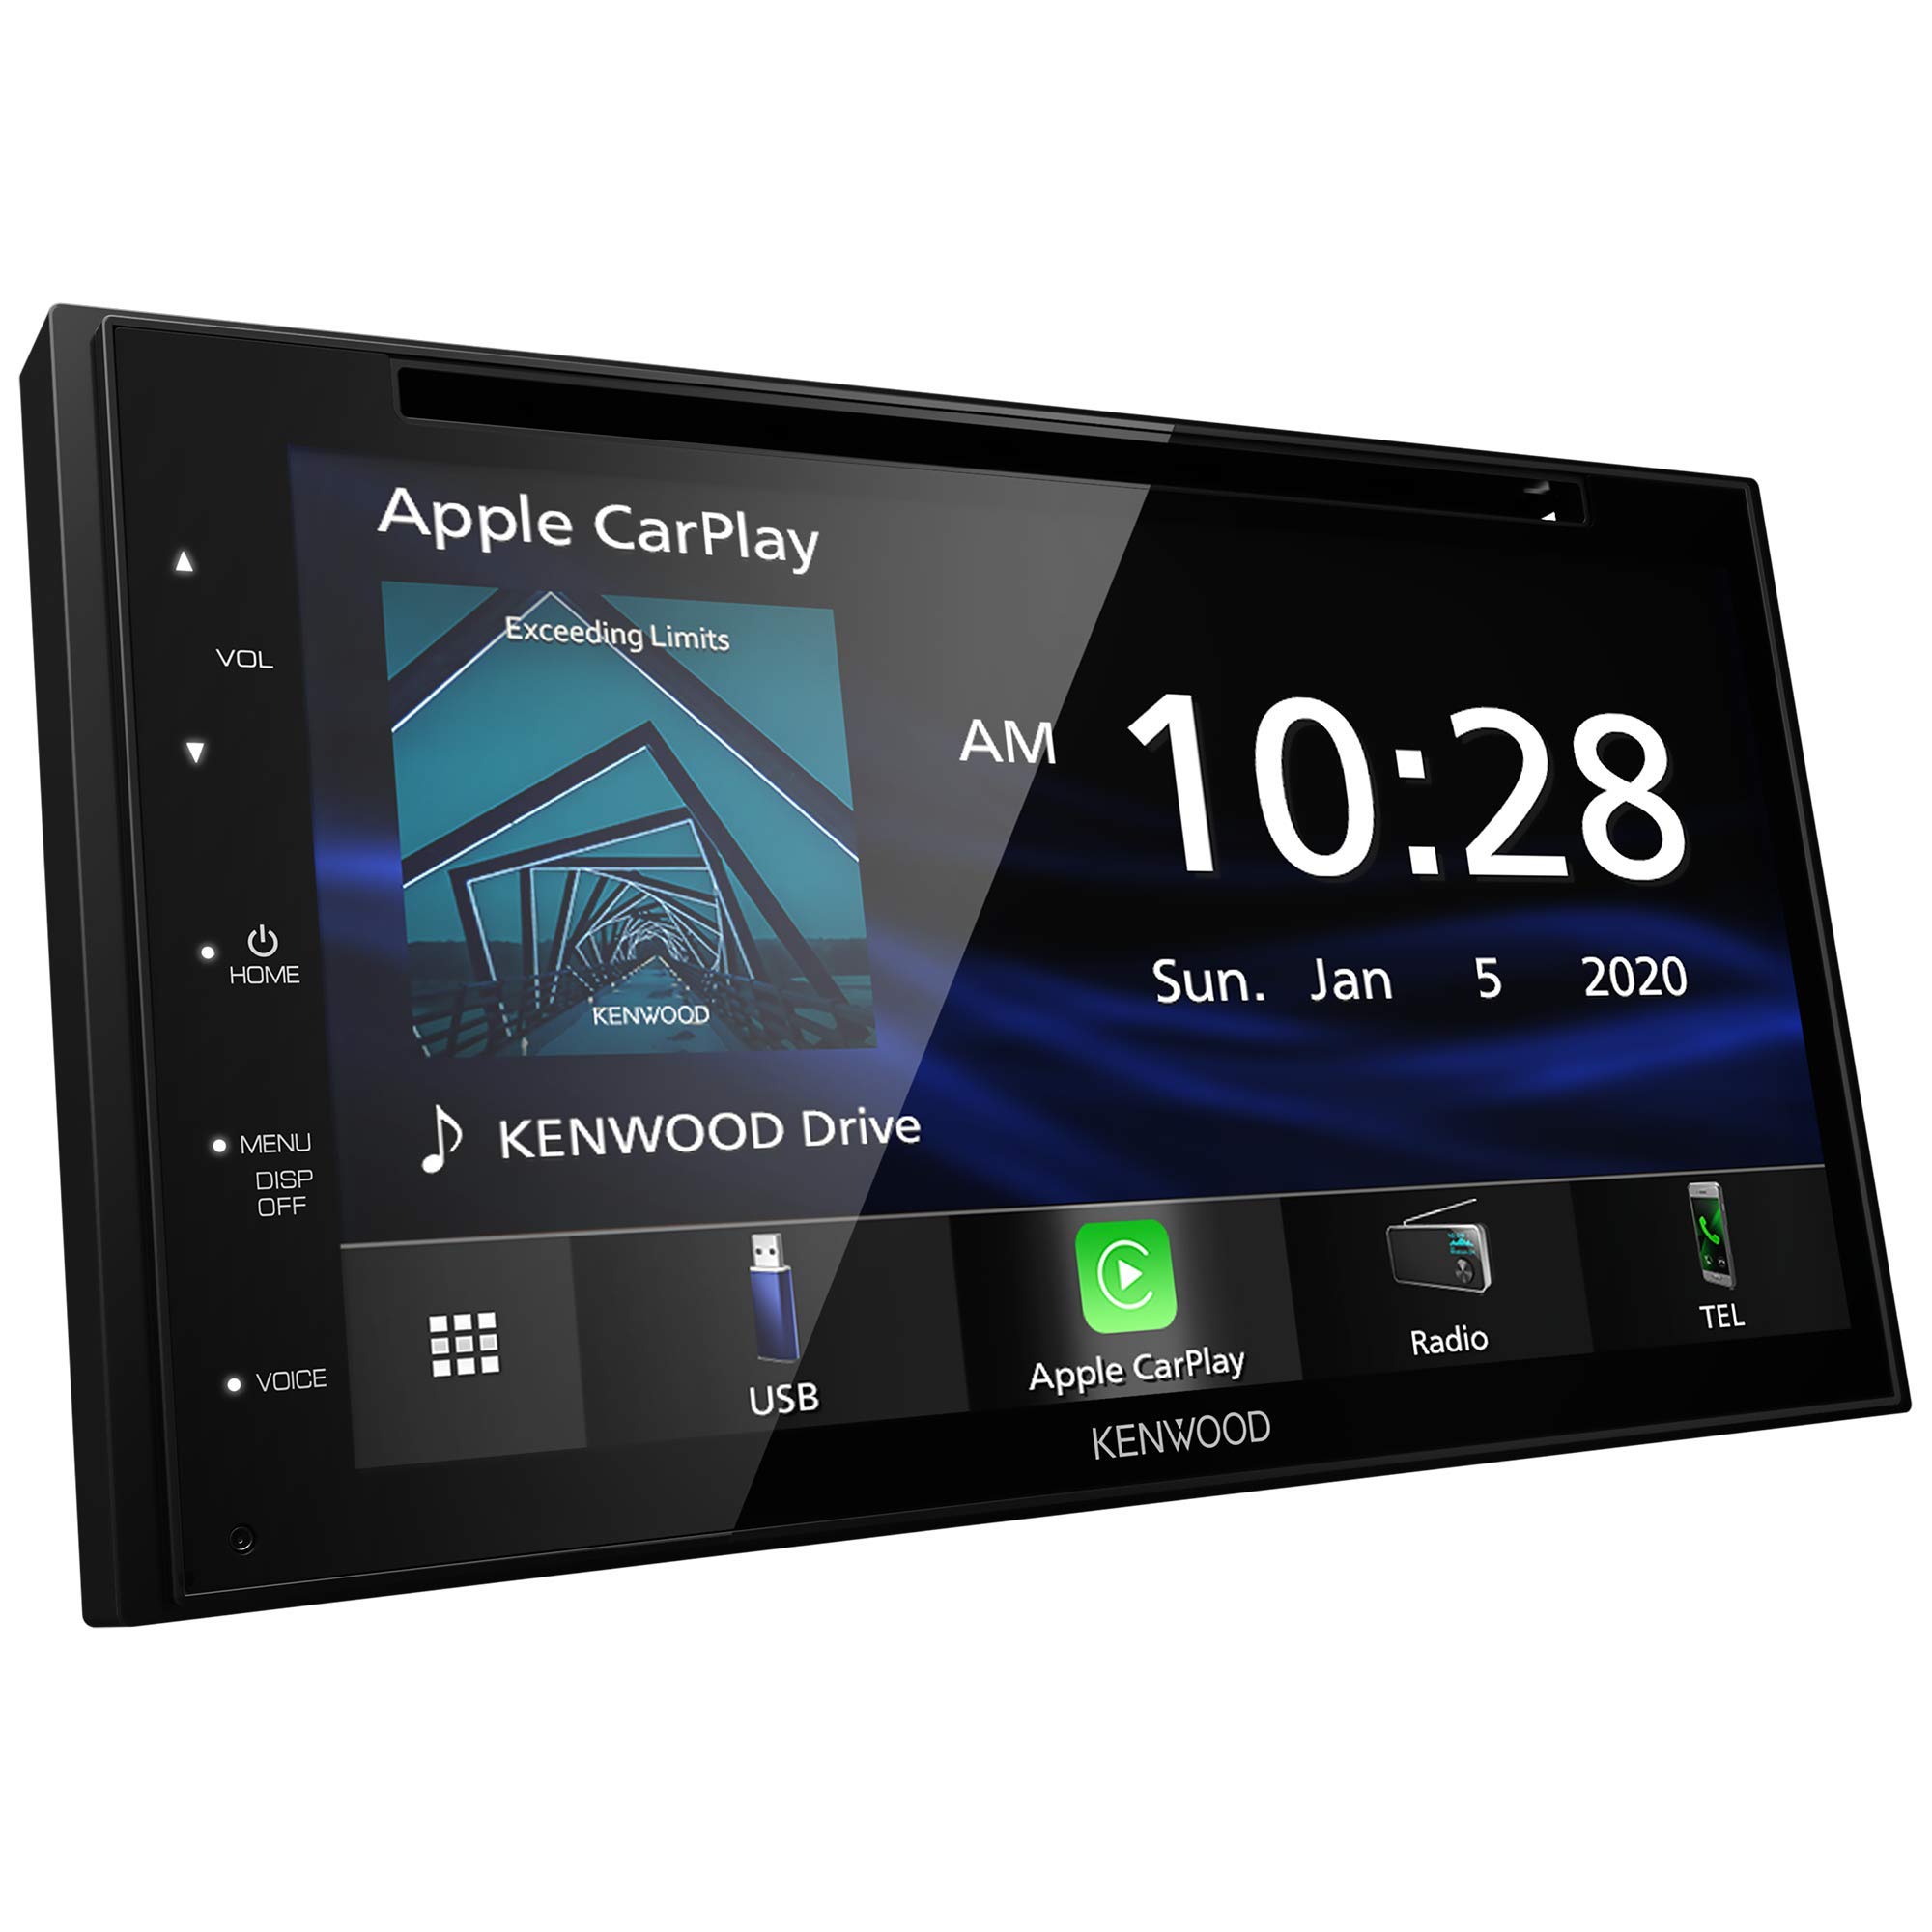  KENWOOD DDX5707S 双 Din DVD 汽车音响，带 Apple Carplay 和 Android Auto、6.8 英寸触摸屏、蓝牙、备用摄像头输入、低音炮输出、USB 端口、A/V 输入、FM/AM 汽车收音机...